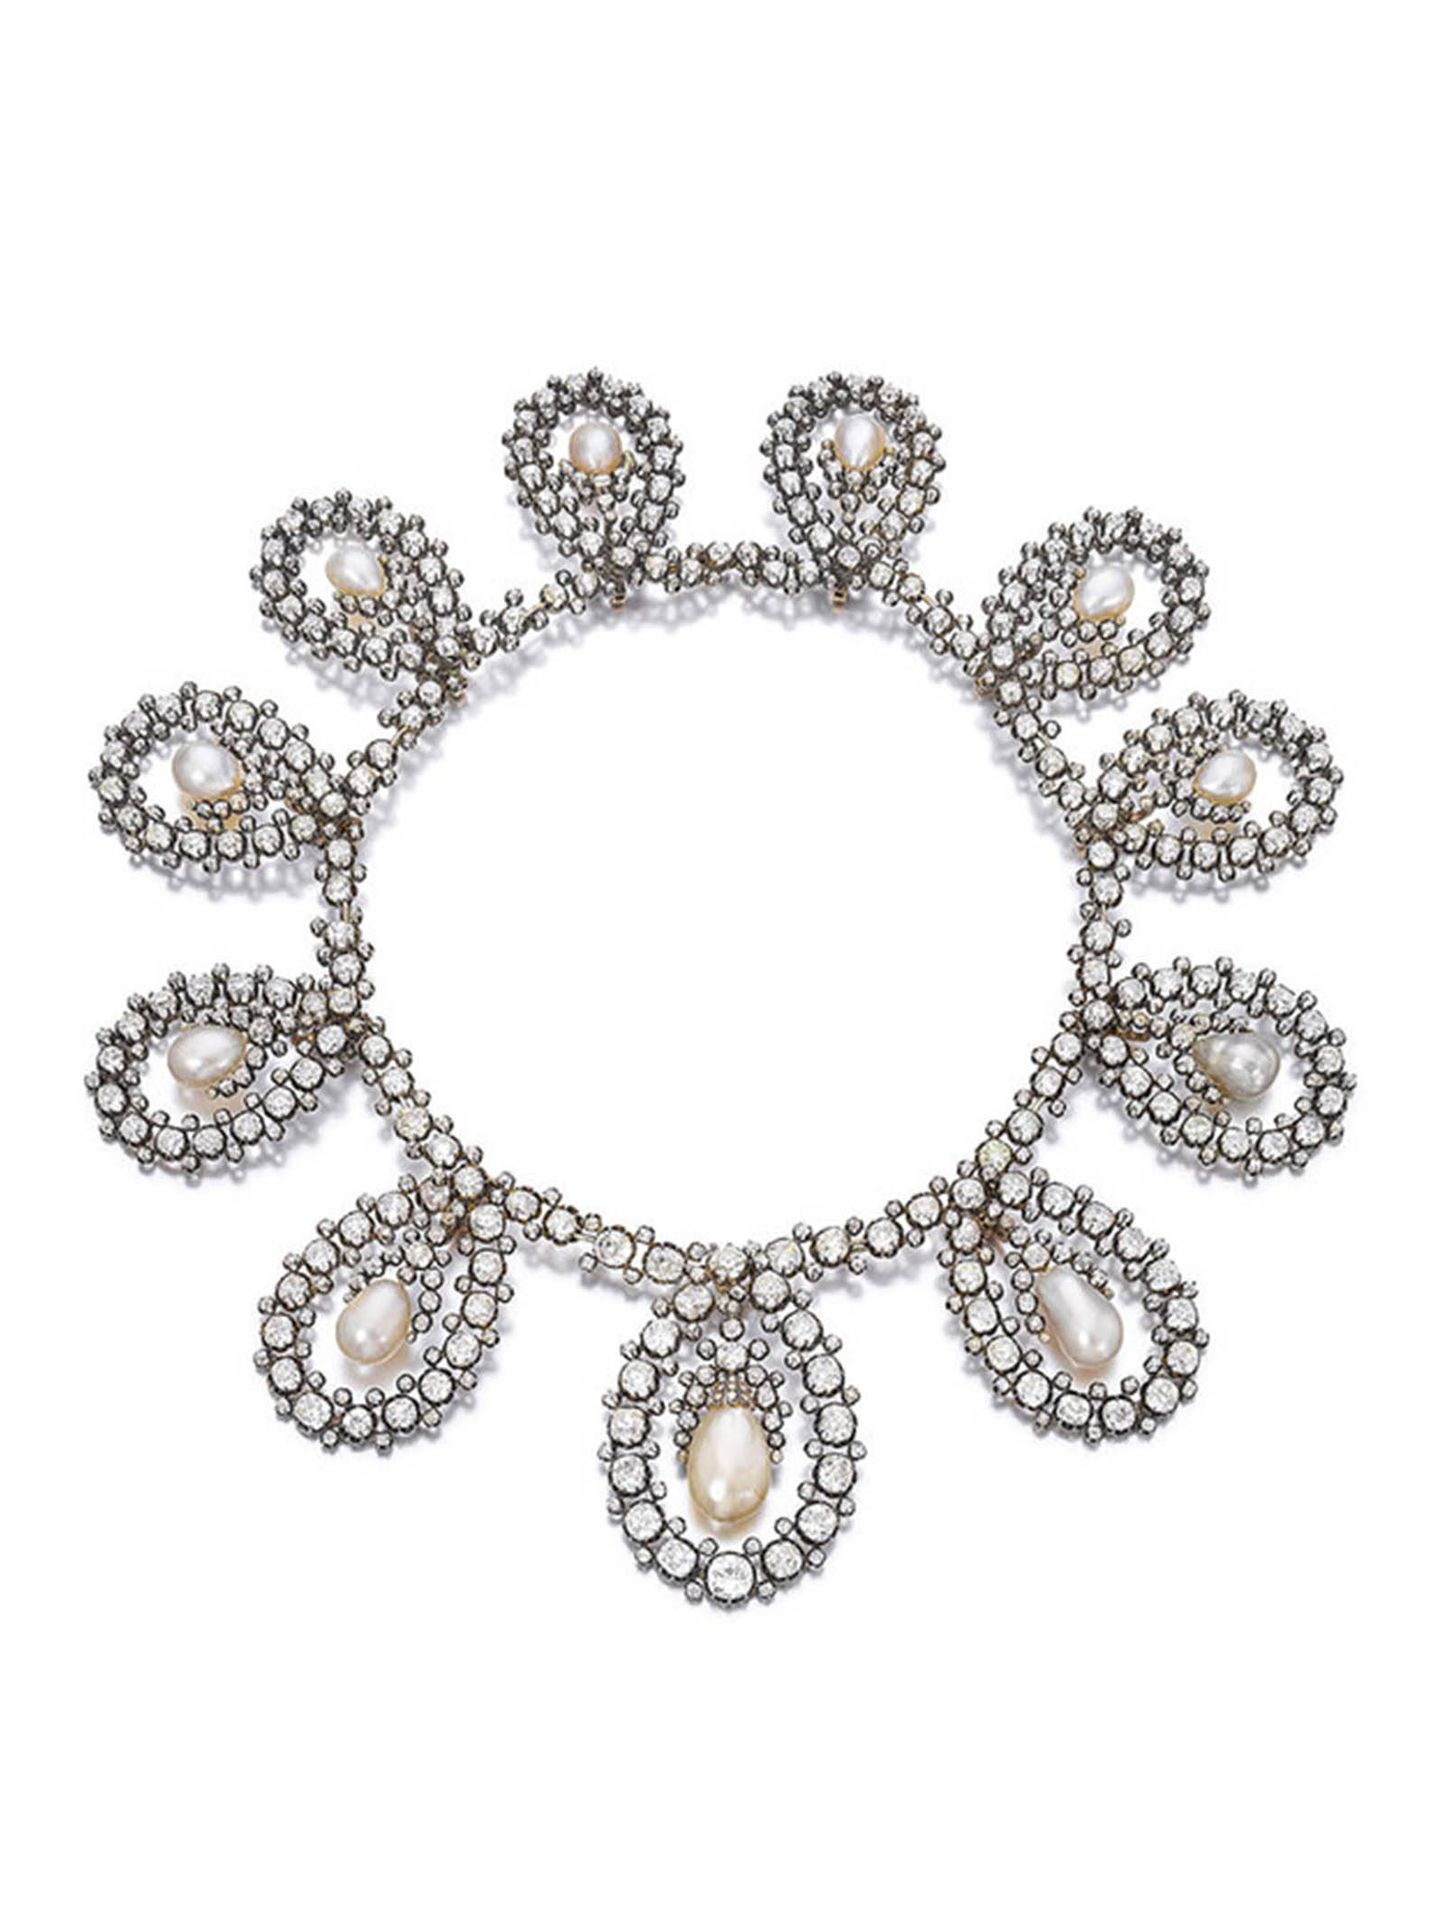 La tiara de María Victoria en forma de collar. (Sotheby's)